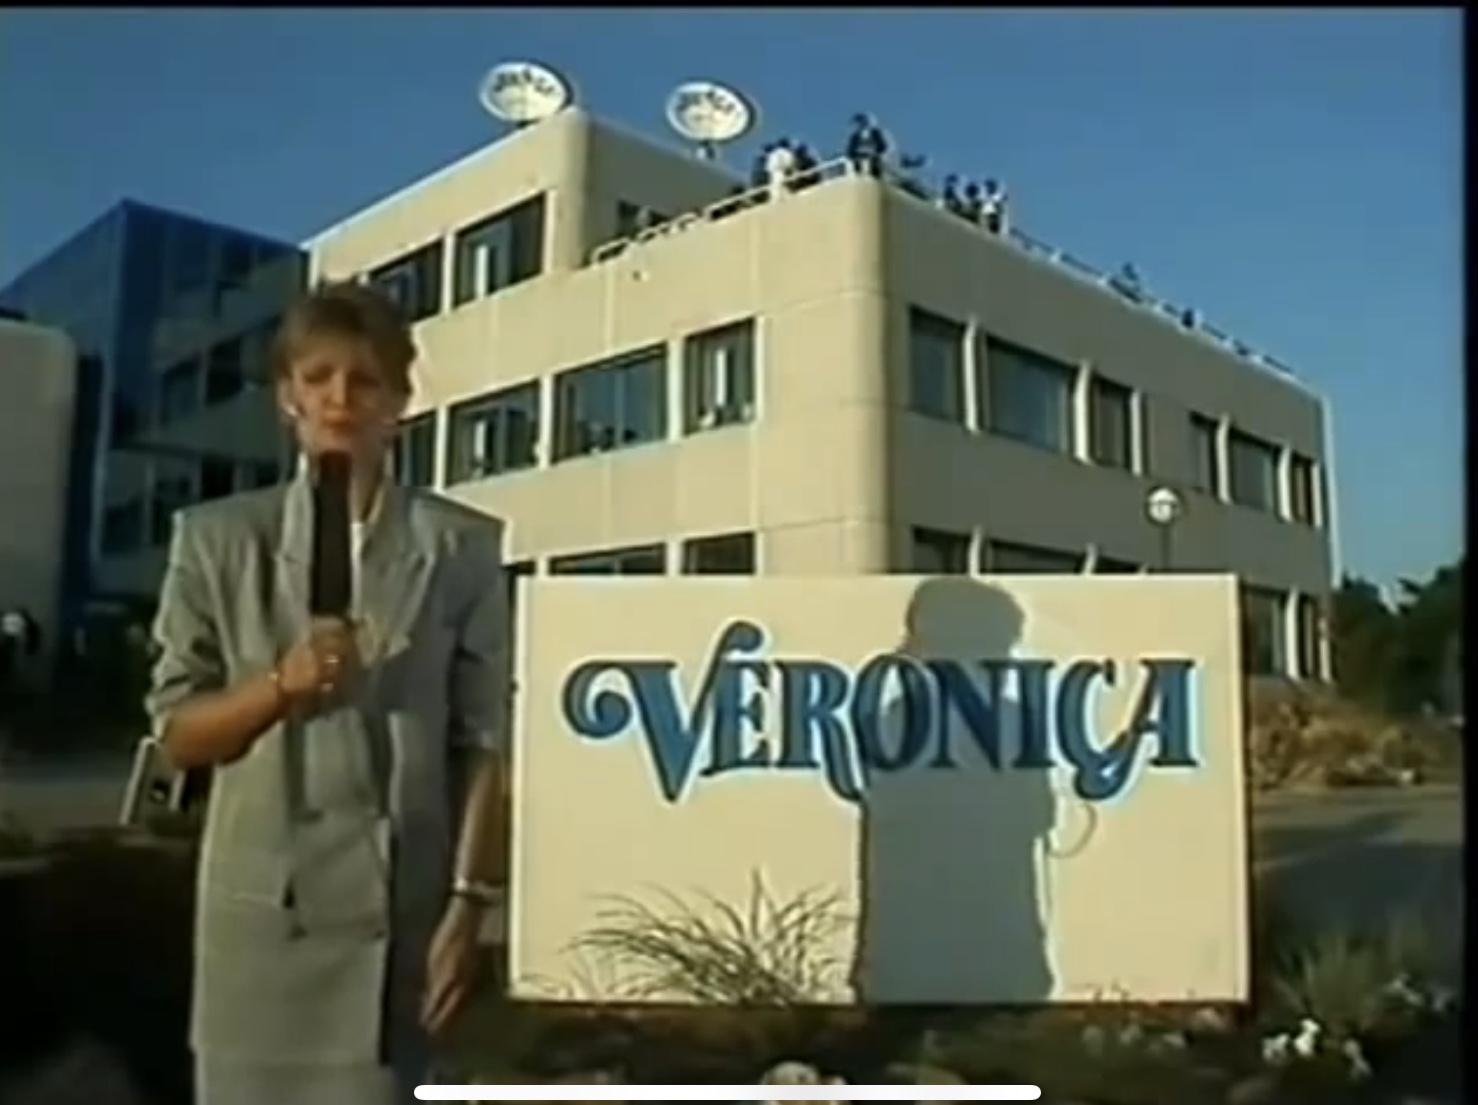 Veronica pand bij de opening in 1987 (met Caroine Tensen)